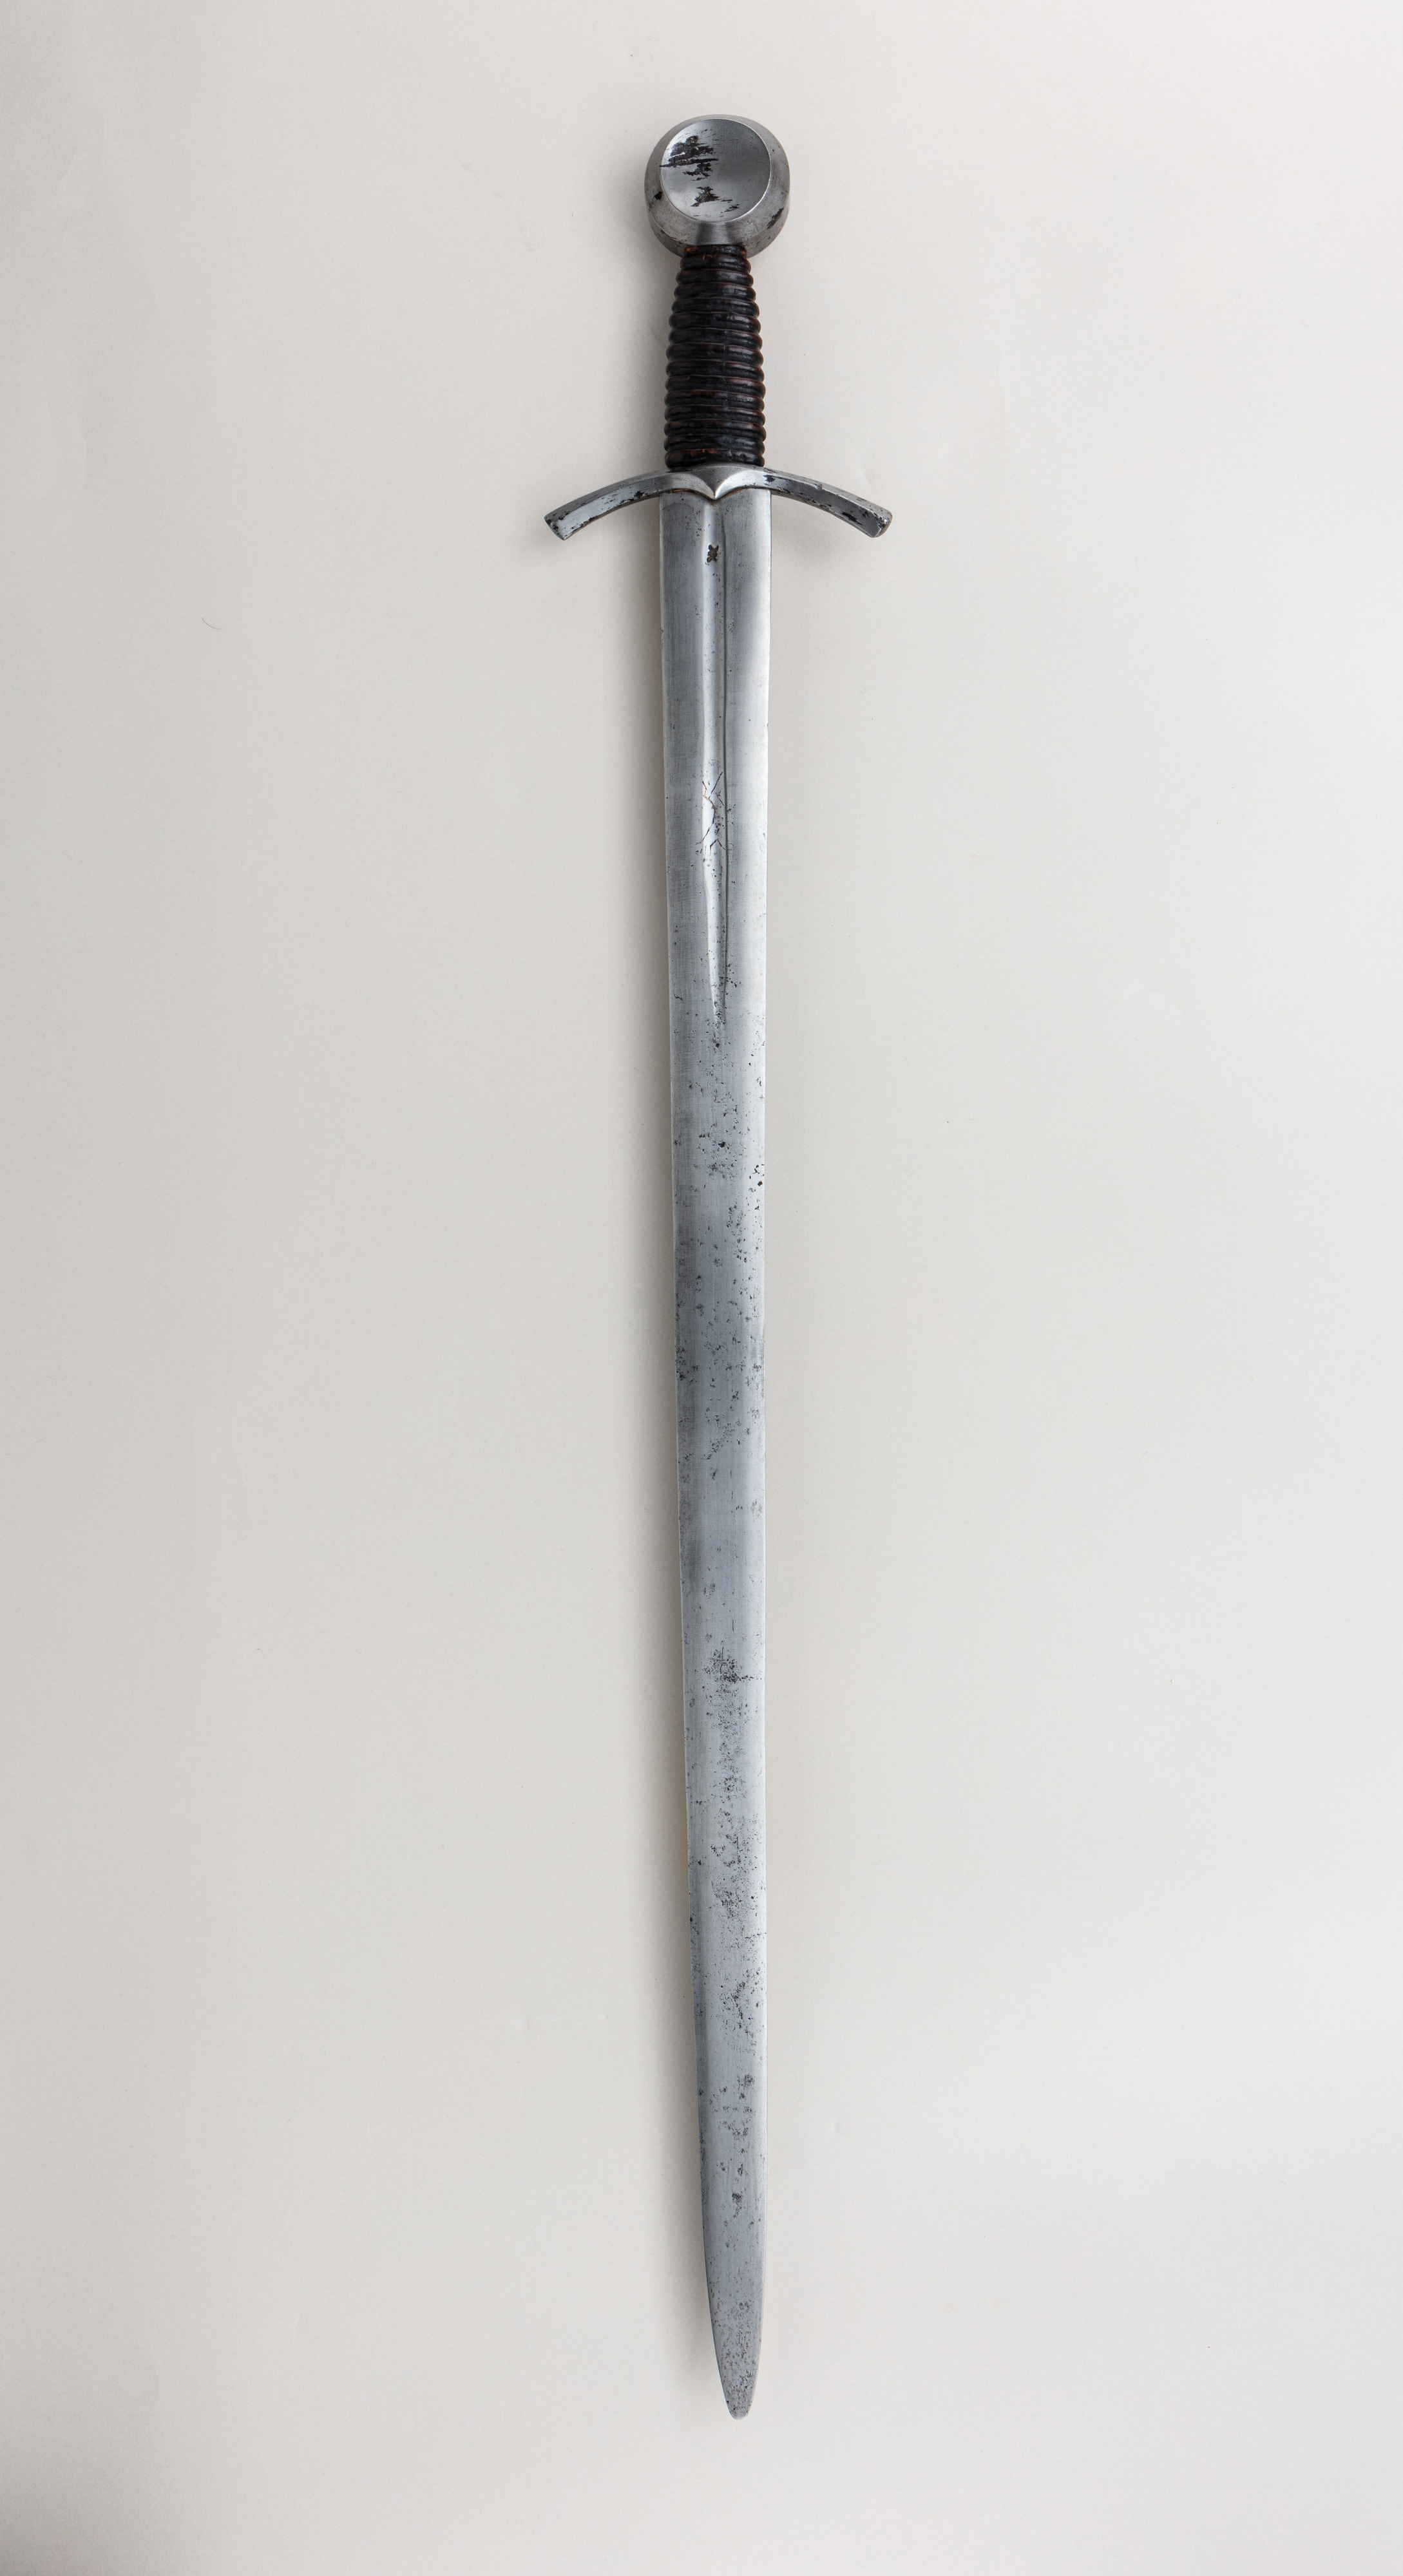 5160 High Carbon Steel Swords & Blades - Kult of Athena